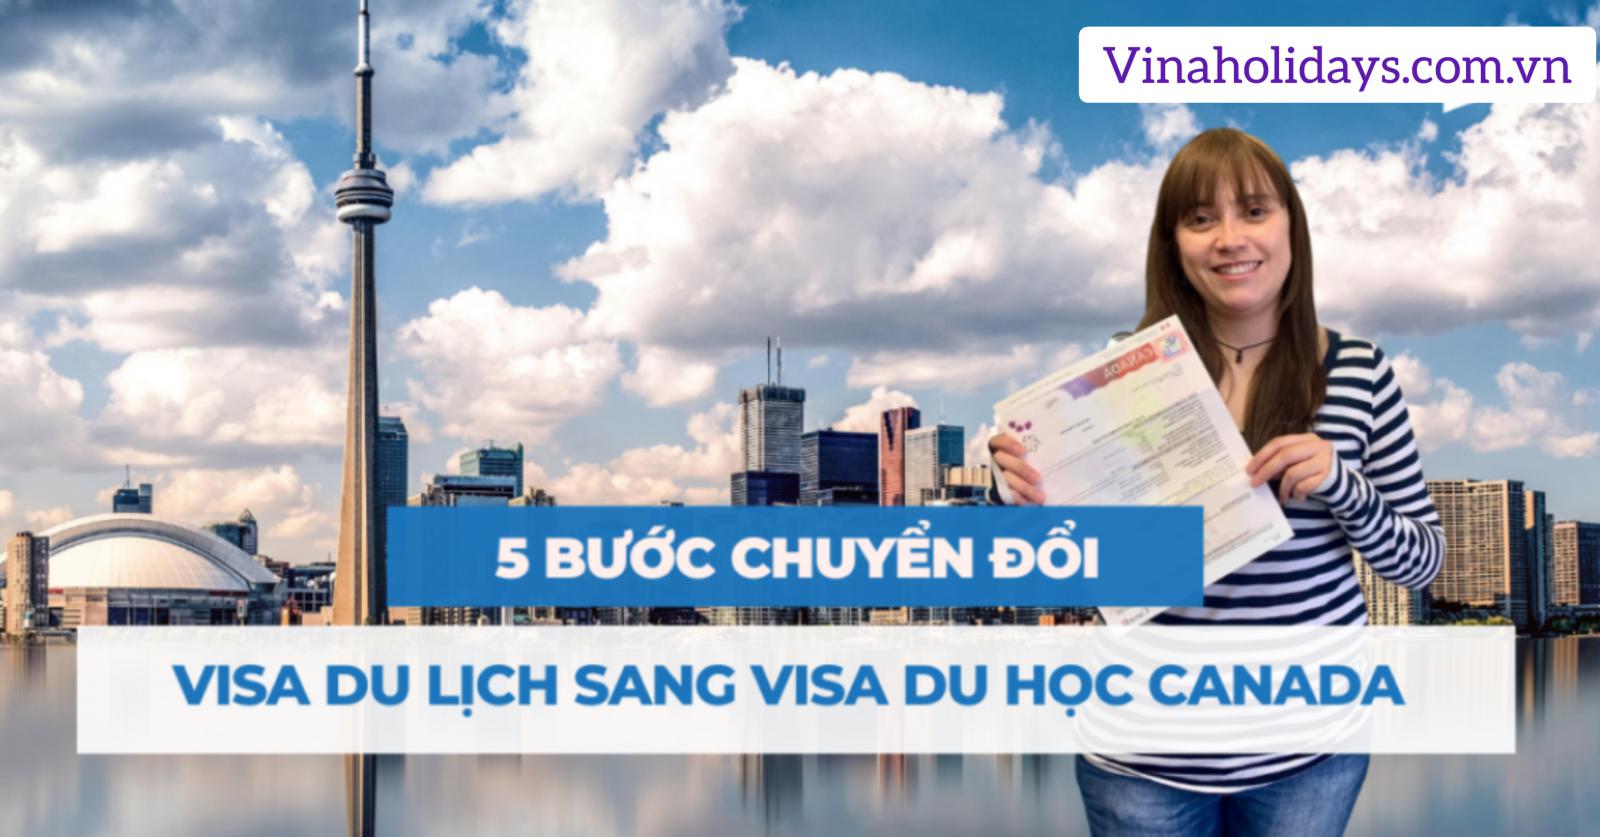 Cách chuyển từ visa Du lịch sang Visa Du học tại Canada như thế nào?